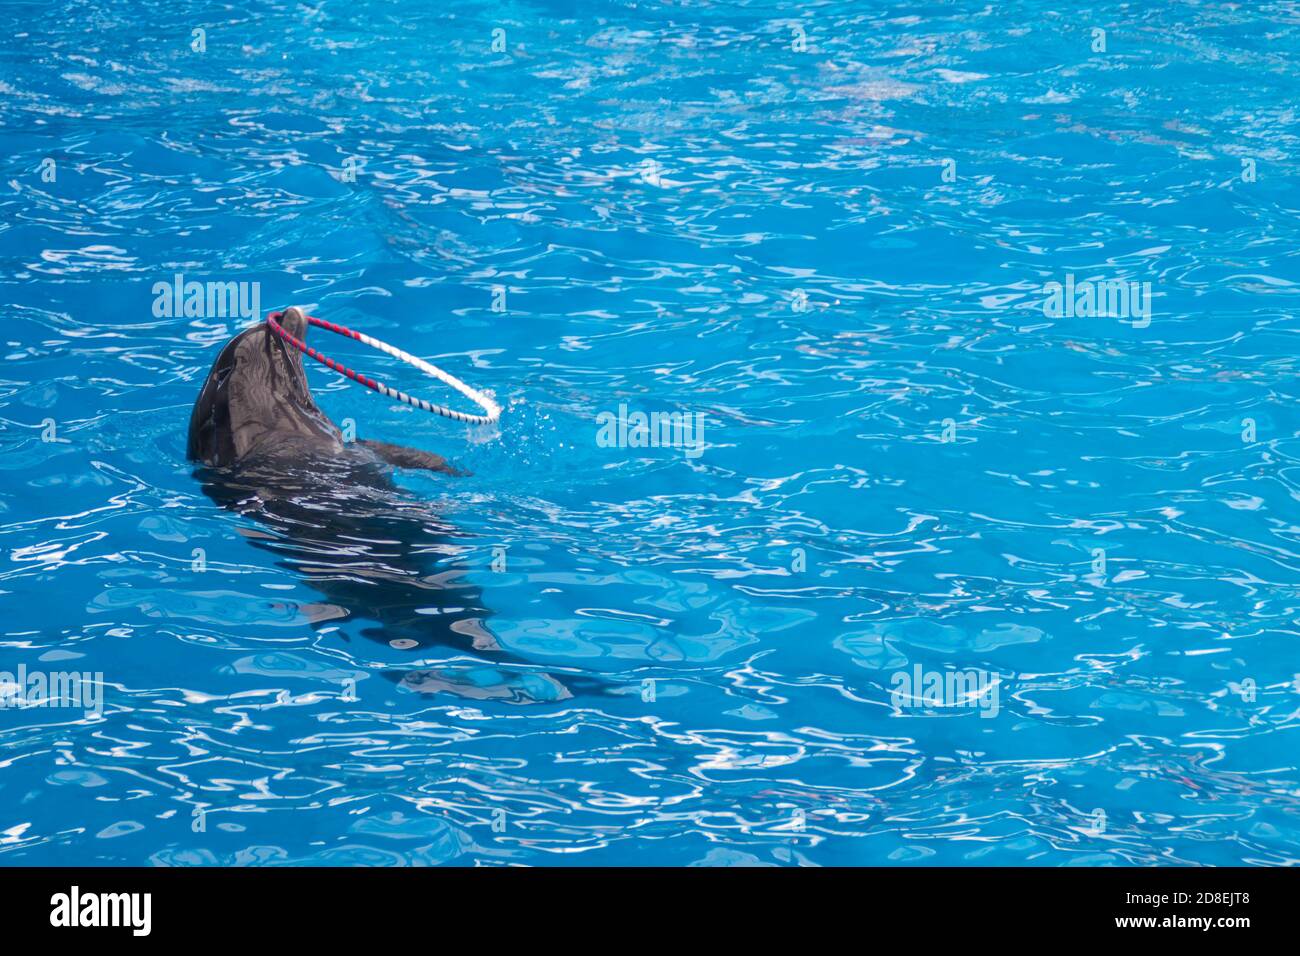 Les dauphins gris mignons nagent dans l'eau bleue. Espace de copie, place pour votre texte. Dauphins à gros nez, mammifères marins sauvages. Vierge pour la publicité nager avec les dauphins, delphinarium, spectacles, aquarium, Banque D'Images